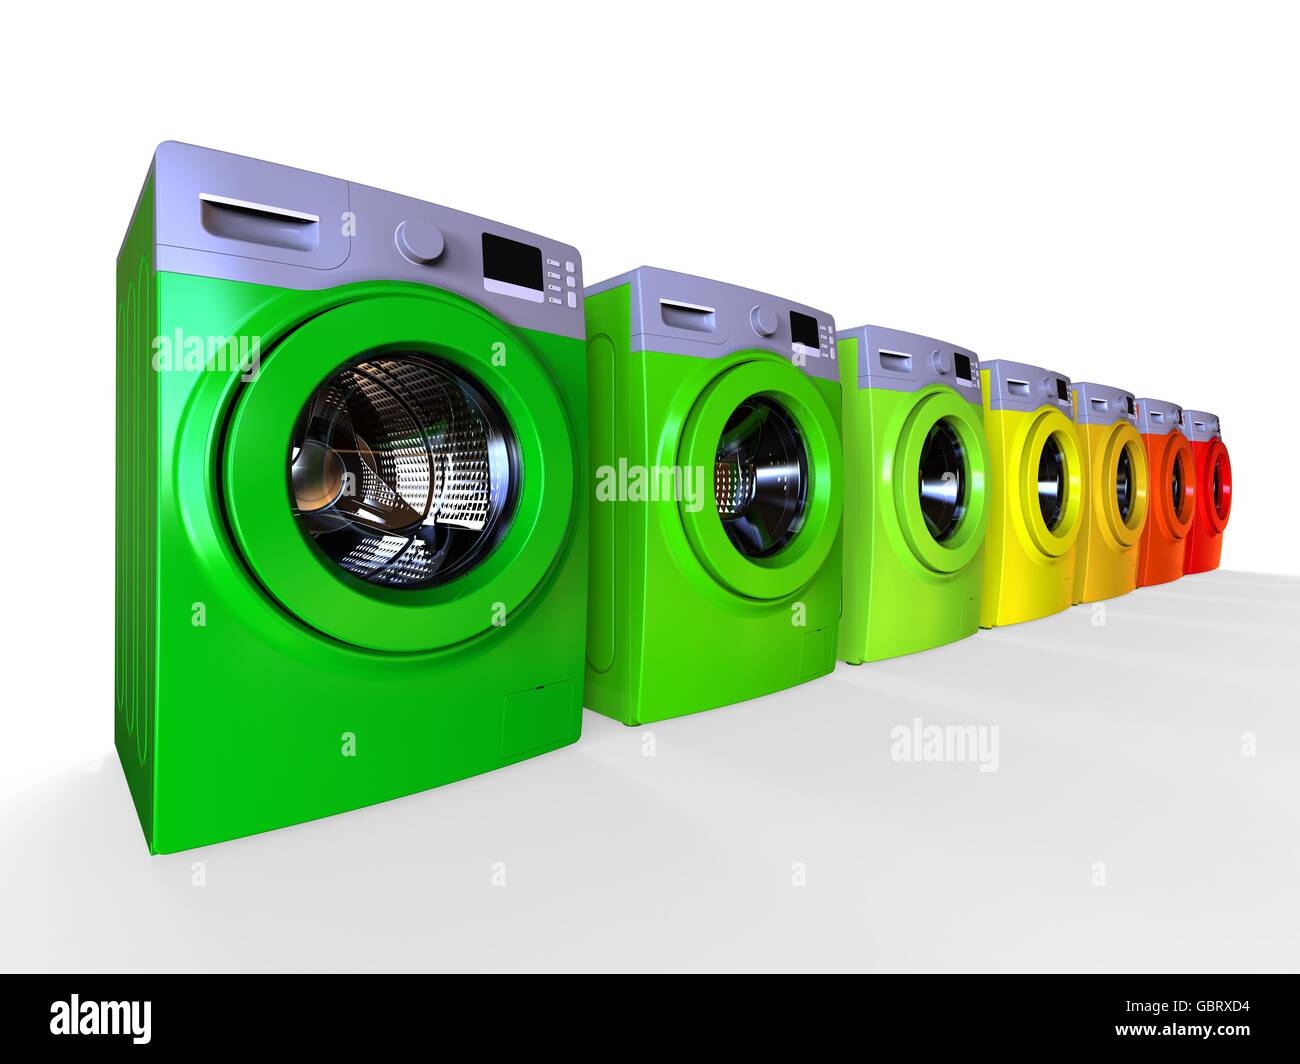 3D render Bild aus einer Reihe von Waschmaschinen in verschiedenen Farben,  ein Energie-Effizienz-Konzept darstellt Stockfotografie - Alamy